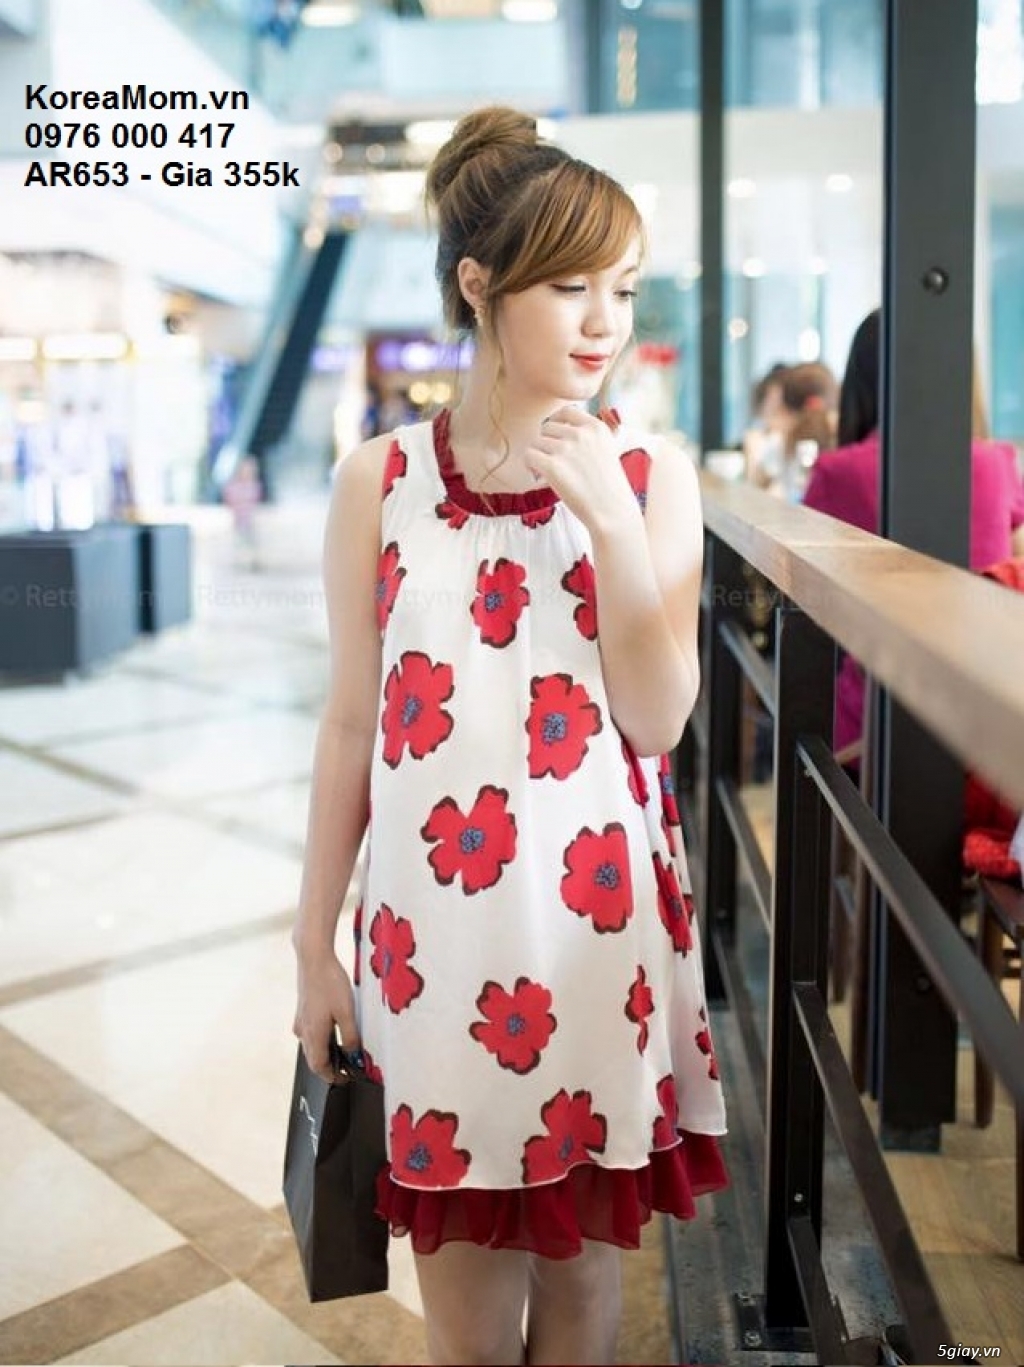 Đầm Bầu KOREA MOM chuyên sỉ và lẻ thời trang bầu Hàn Quốc với giá tốt nhất, thời trang sành điệu - 33